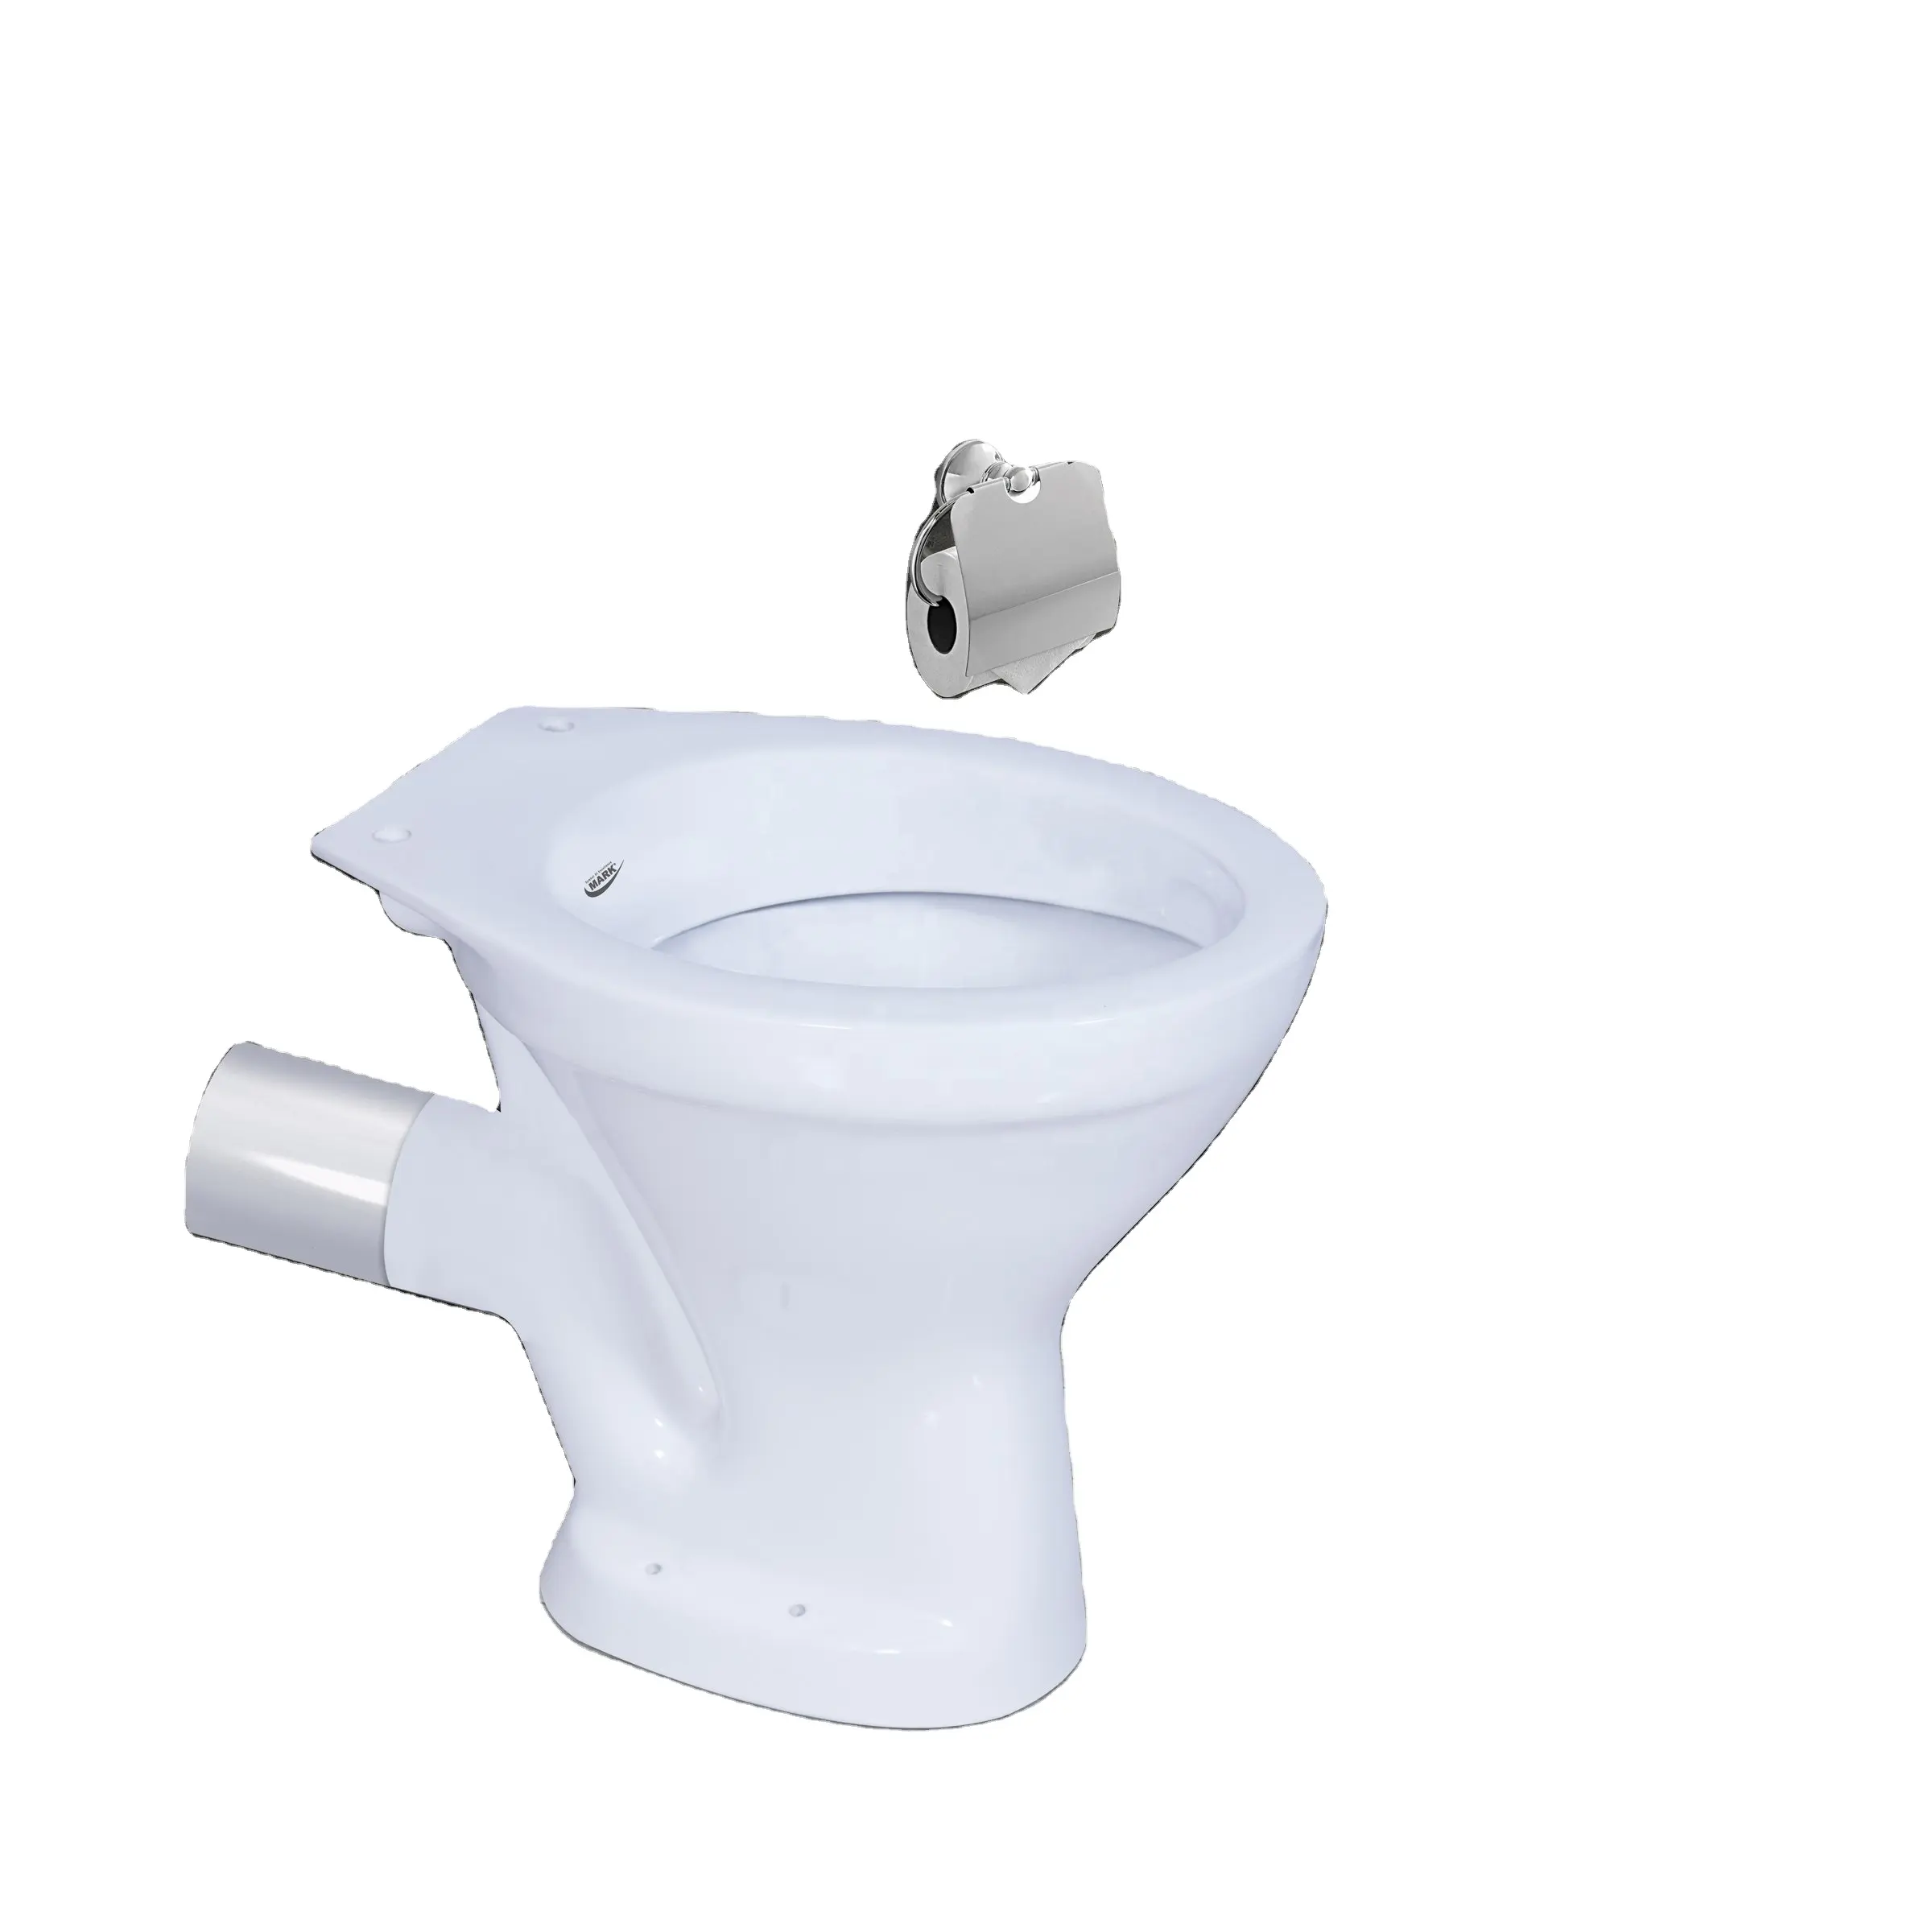 Европейские стандартные товары для туалета, туалетный унитаз с обратной стенкой, ловушка для ванной комнаты, туалетный набор для туалета, комод для ванной